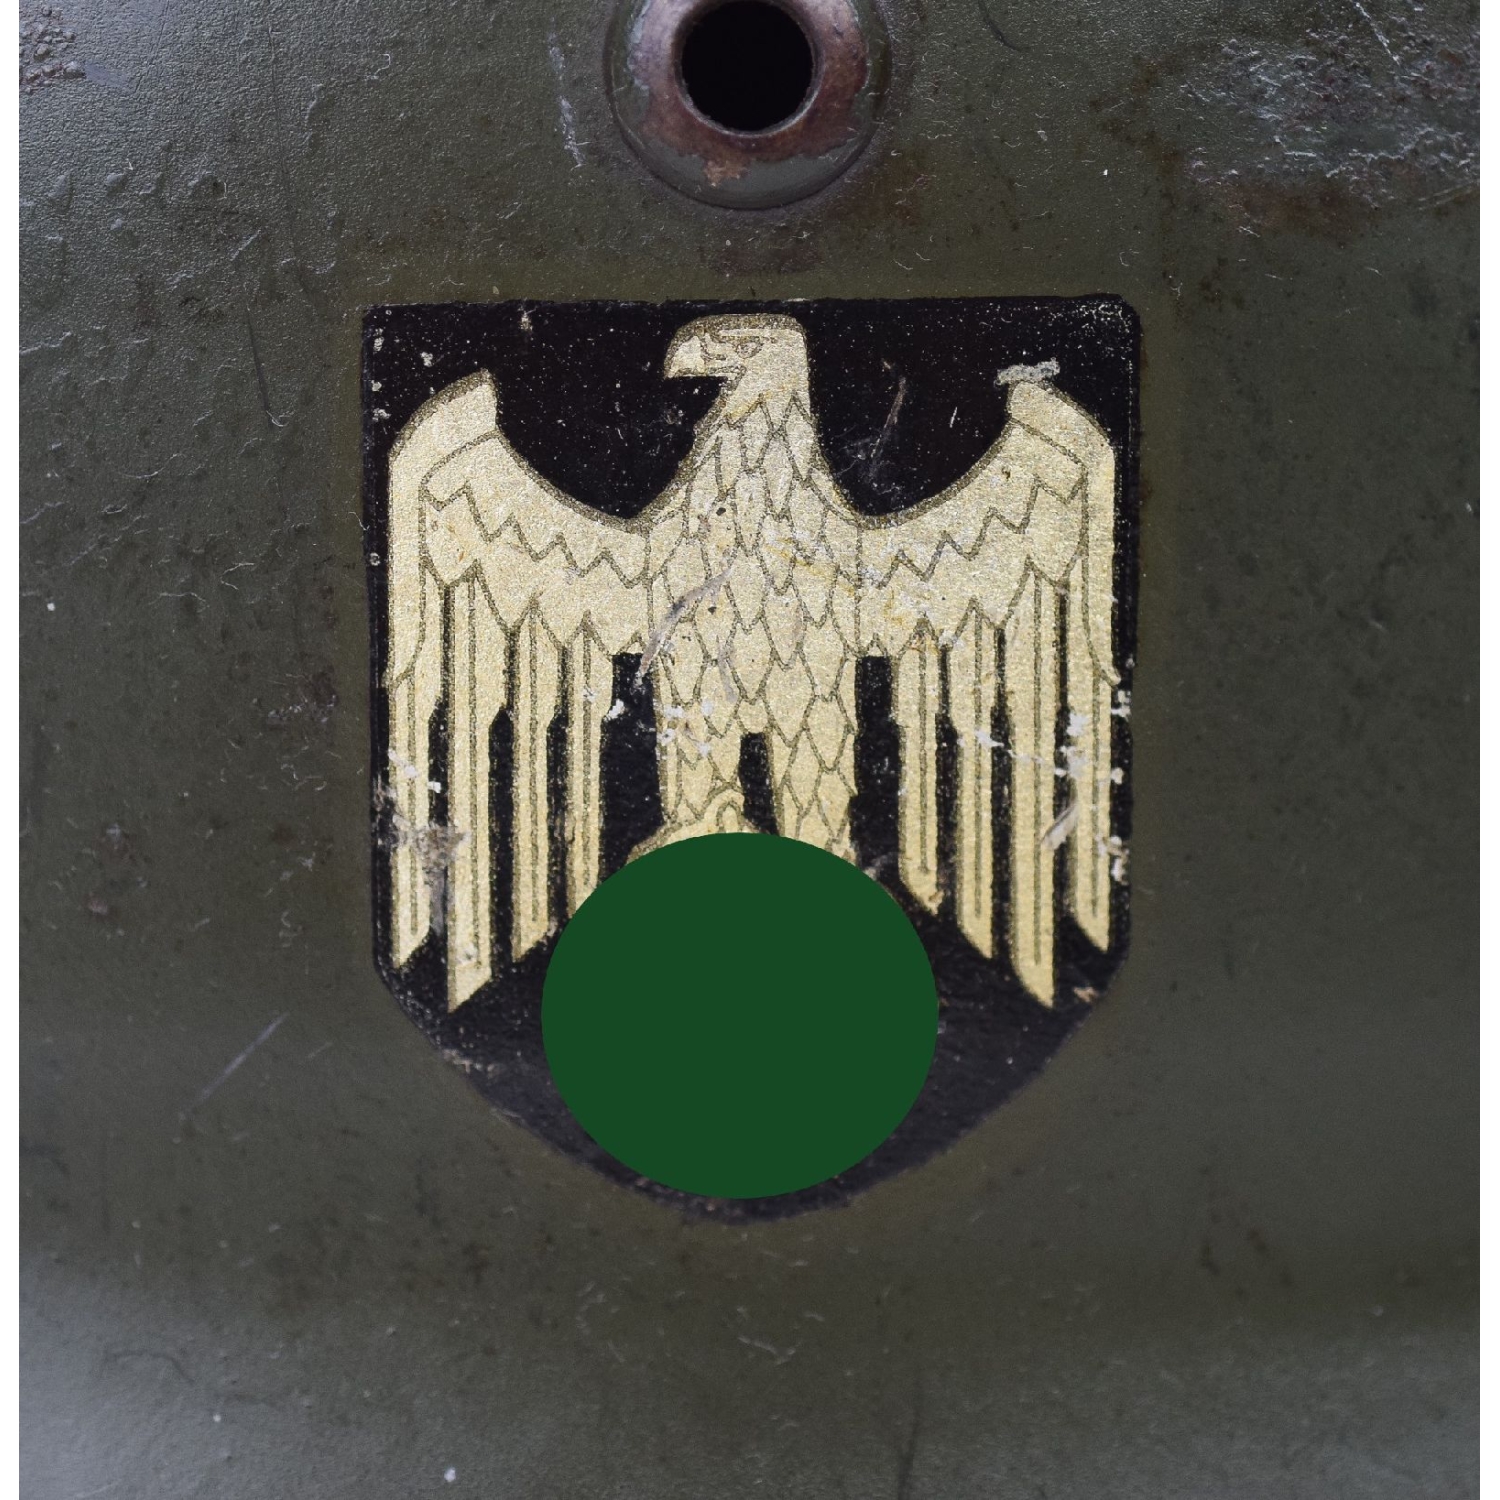 M35 Stahlhelm der Wehrmacht Doppelemblemer in Apfelgrün